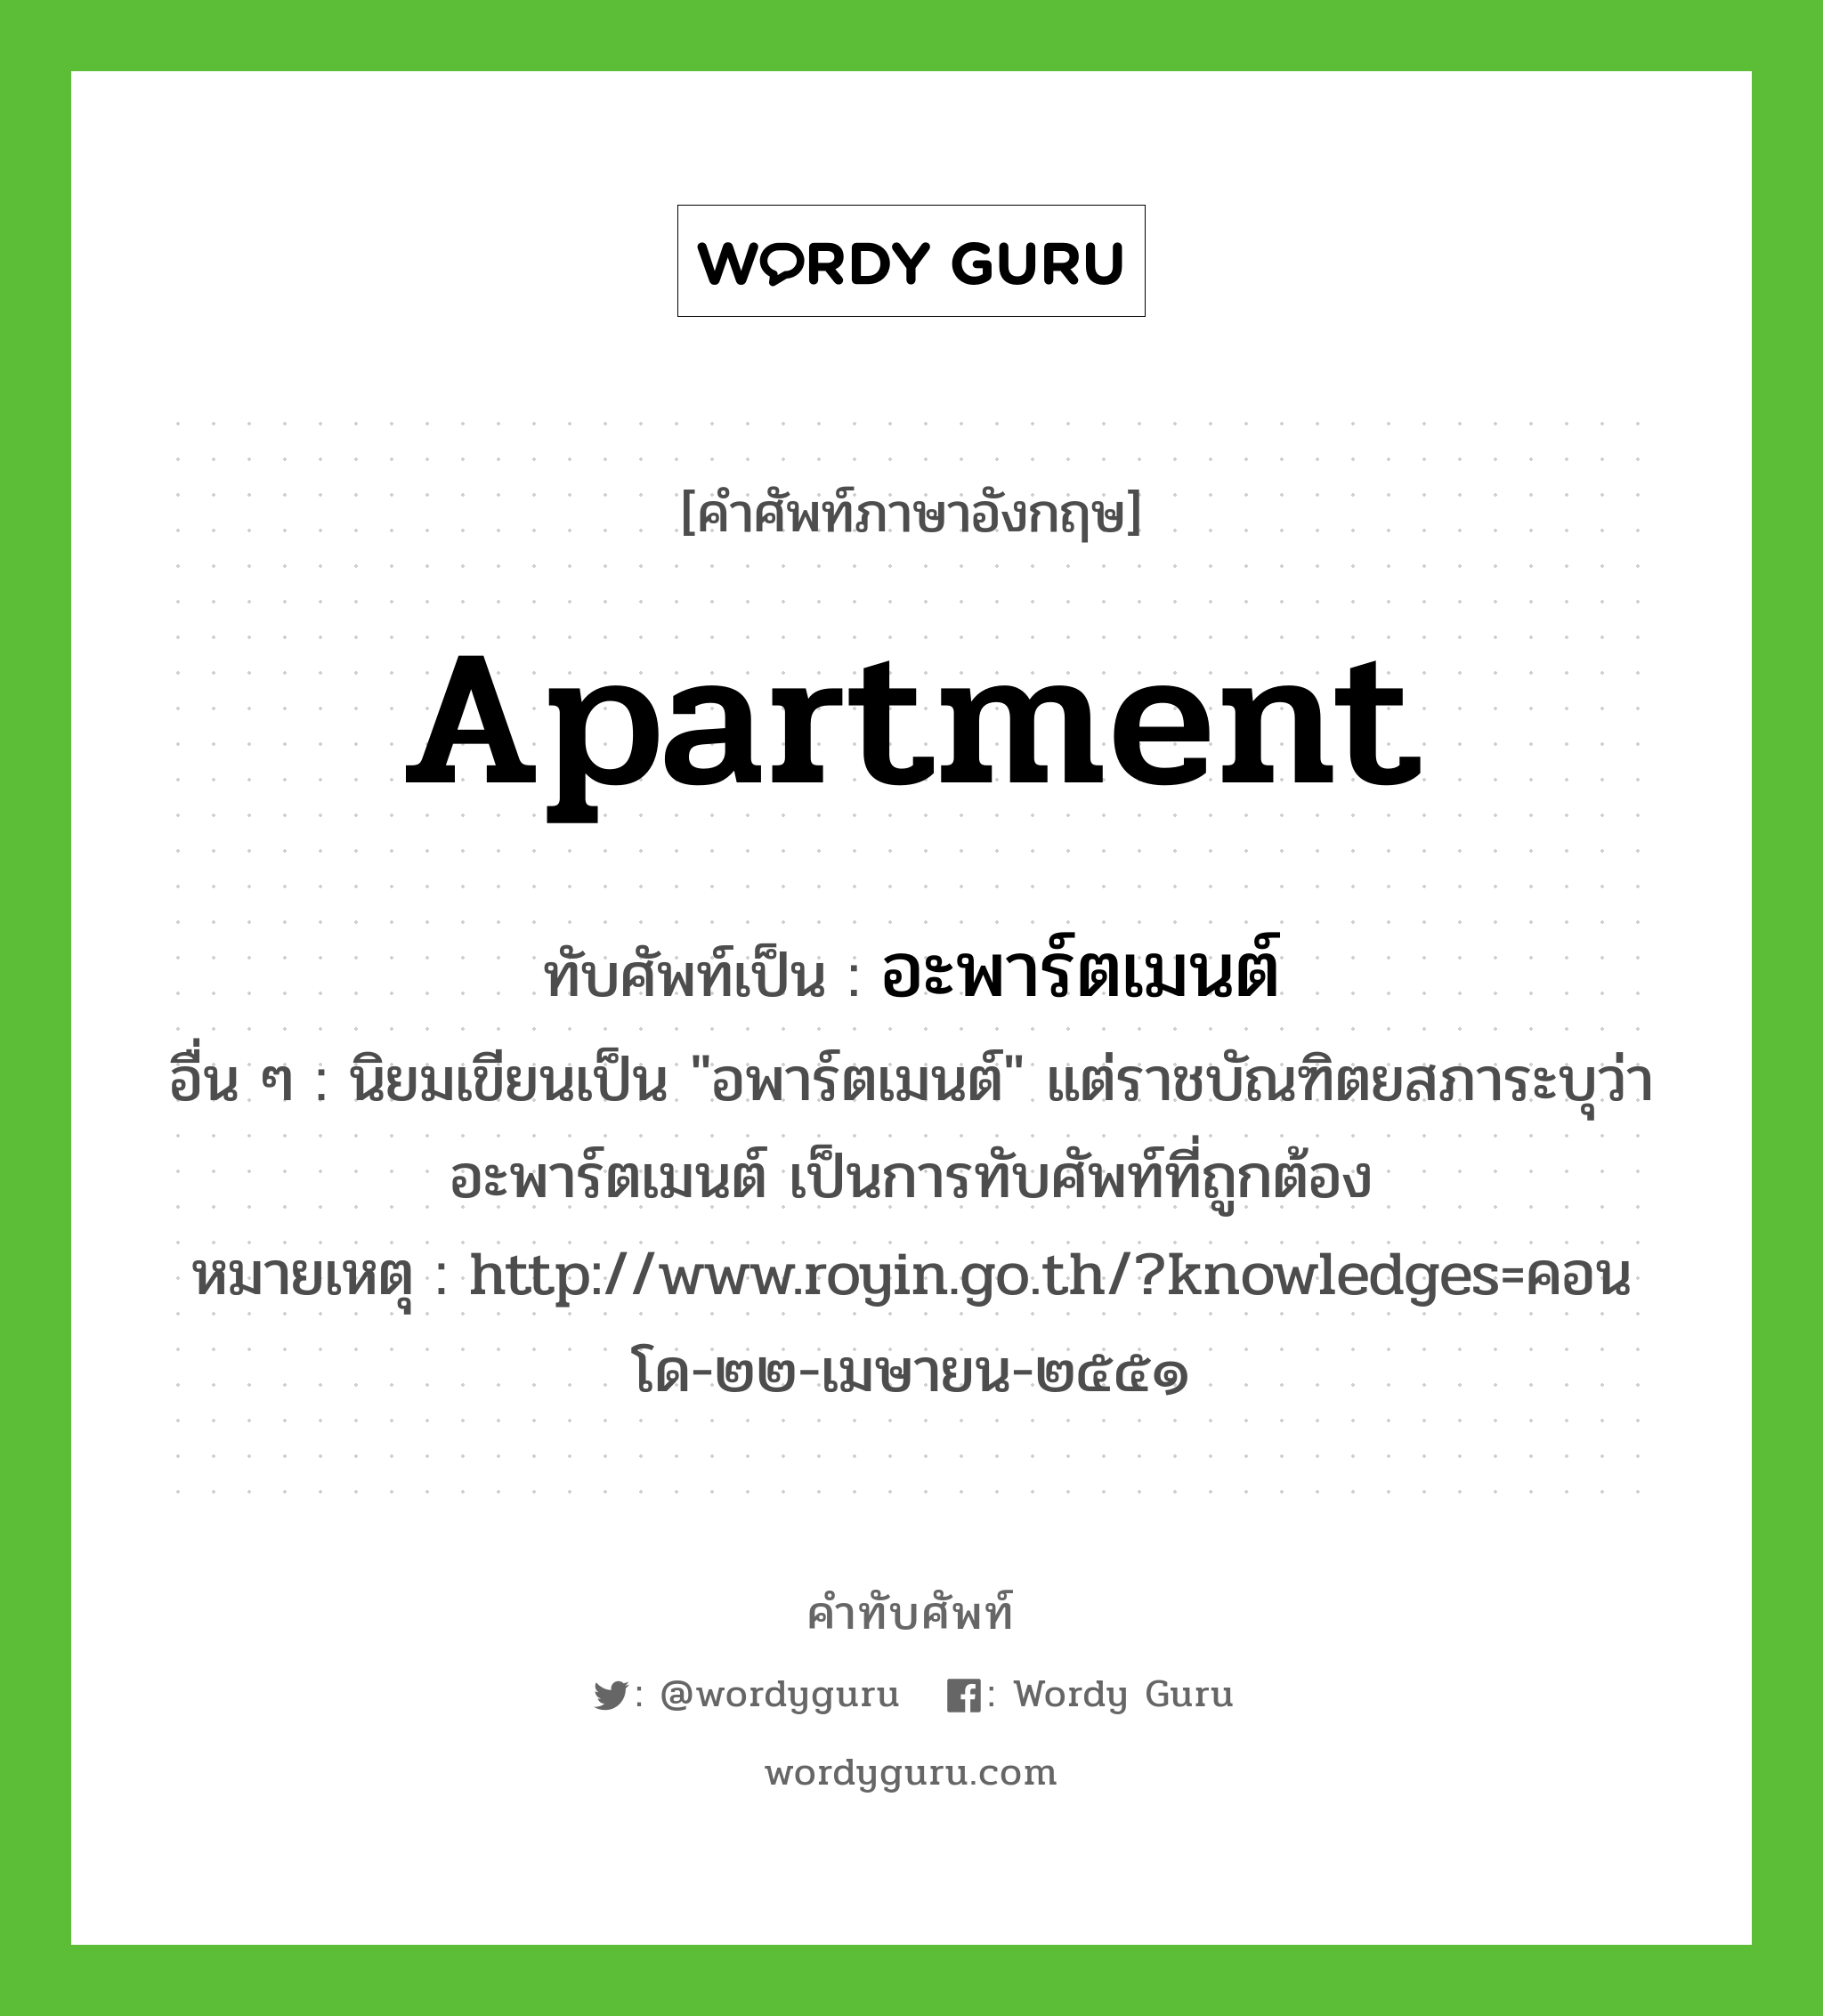 อะพาร์ตเมนต์ เขียนอย่างไร?, คำศัพท์ภาษาอังกฤษ อะพาร์ตเมนต์ ทับศัพท์เป็น apartment อื่น ๆ นิยมเขียนเป็น "อพาร์ตเมนต์" แต่ราชบัณฑิตยสภาระบุว่า อะพาร์ตเมนต์ เป็นการทับศัพท์ที่ถูกต้อง หมายเหตุ http://www.royin.go.th/?knowledges=คอนโด-๒๒-เมษายน-๒๕๕๑